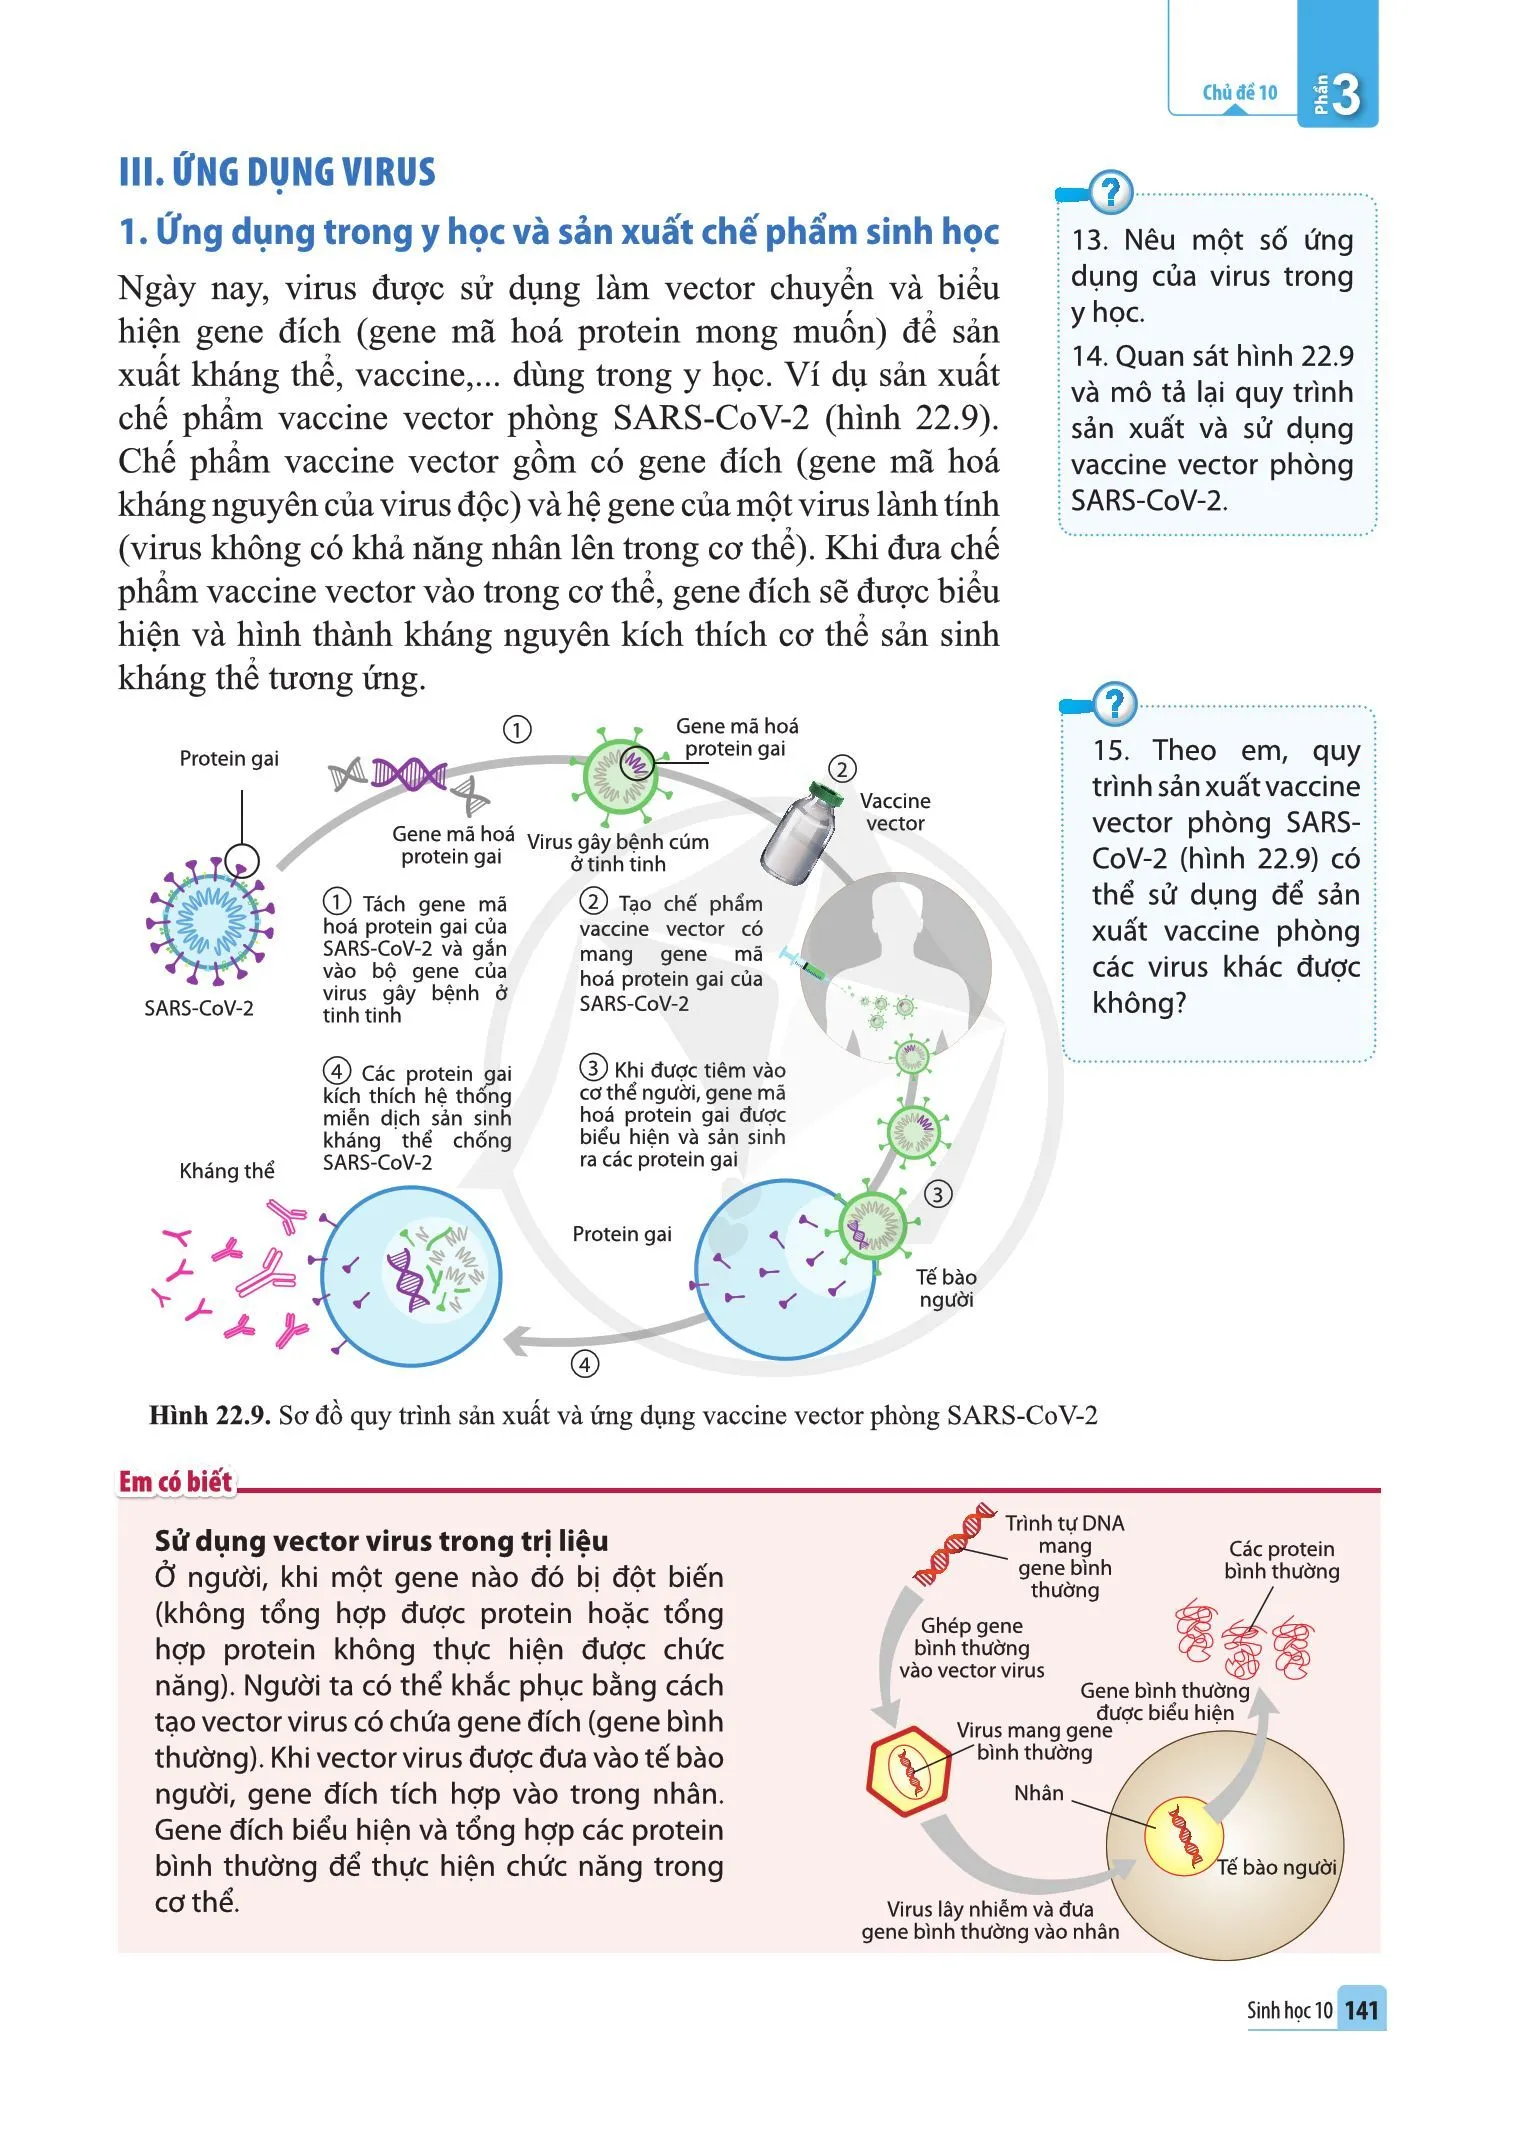 Bài 22. Phương thức lây truyền, cách phòng chống và ứng dụng của virus